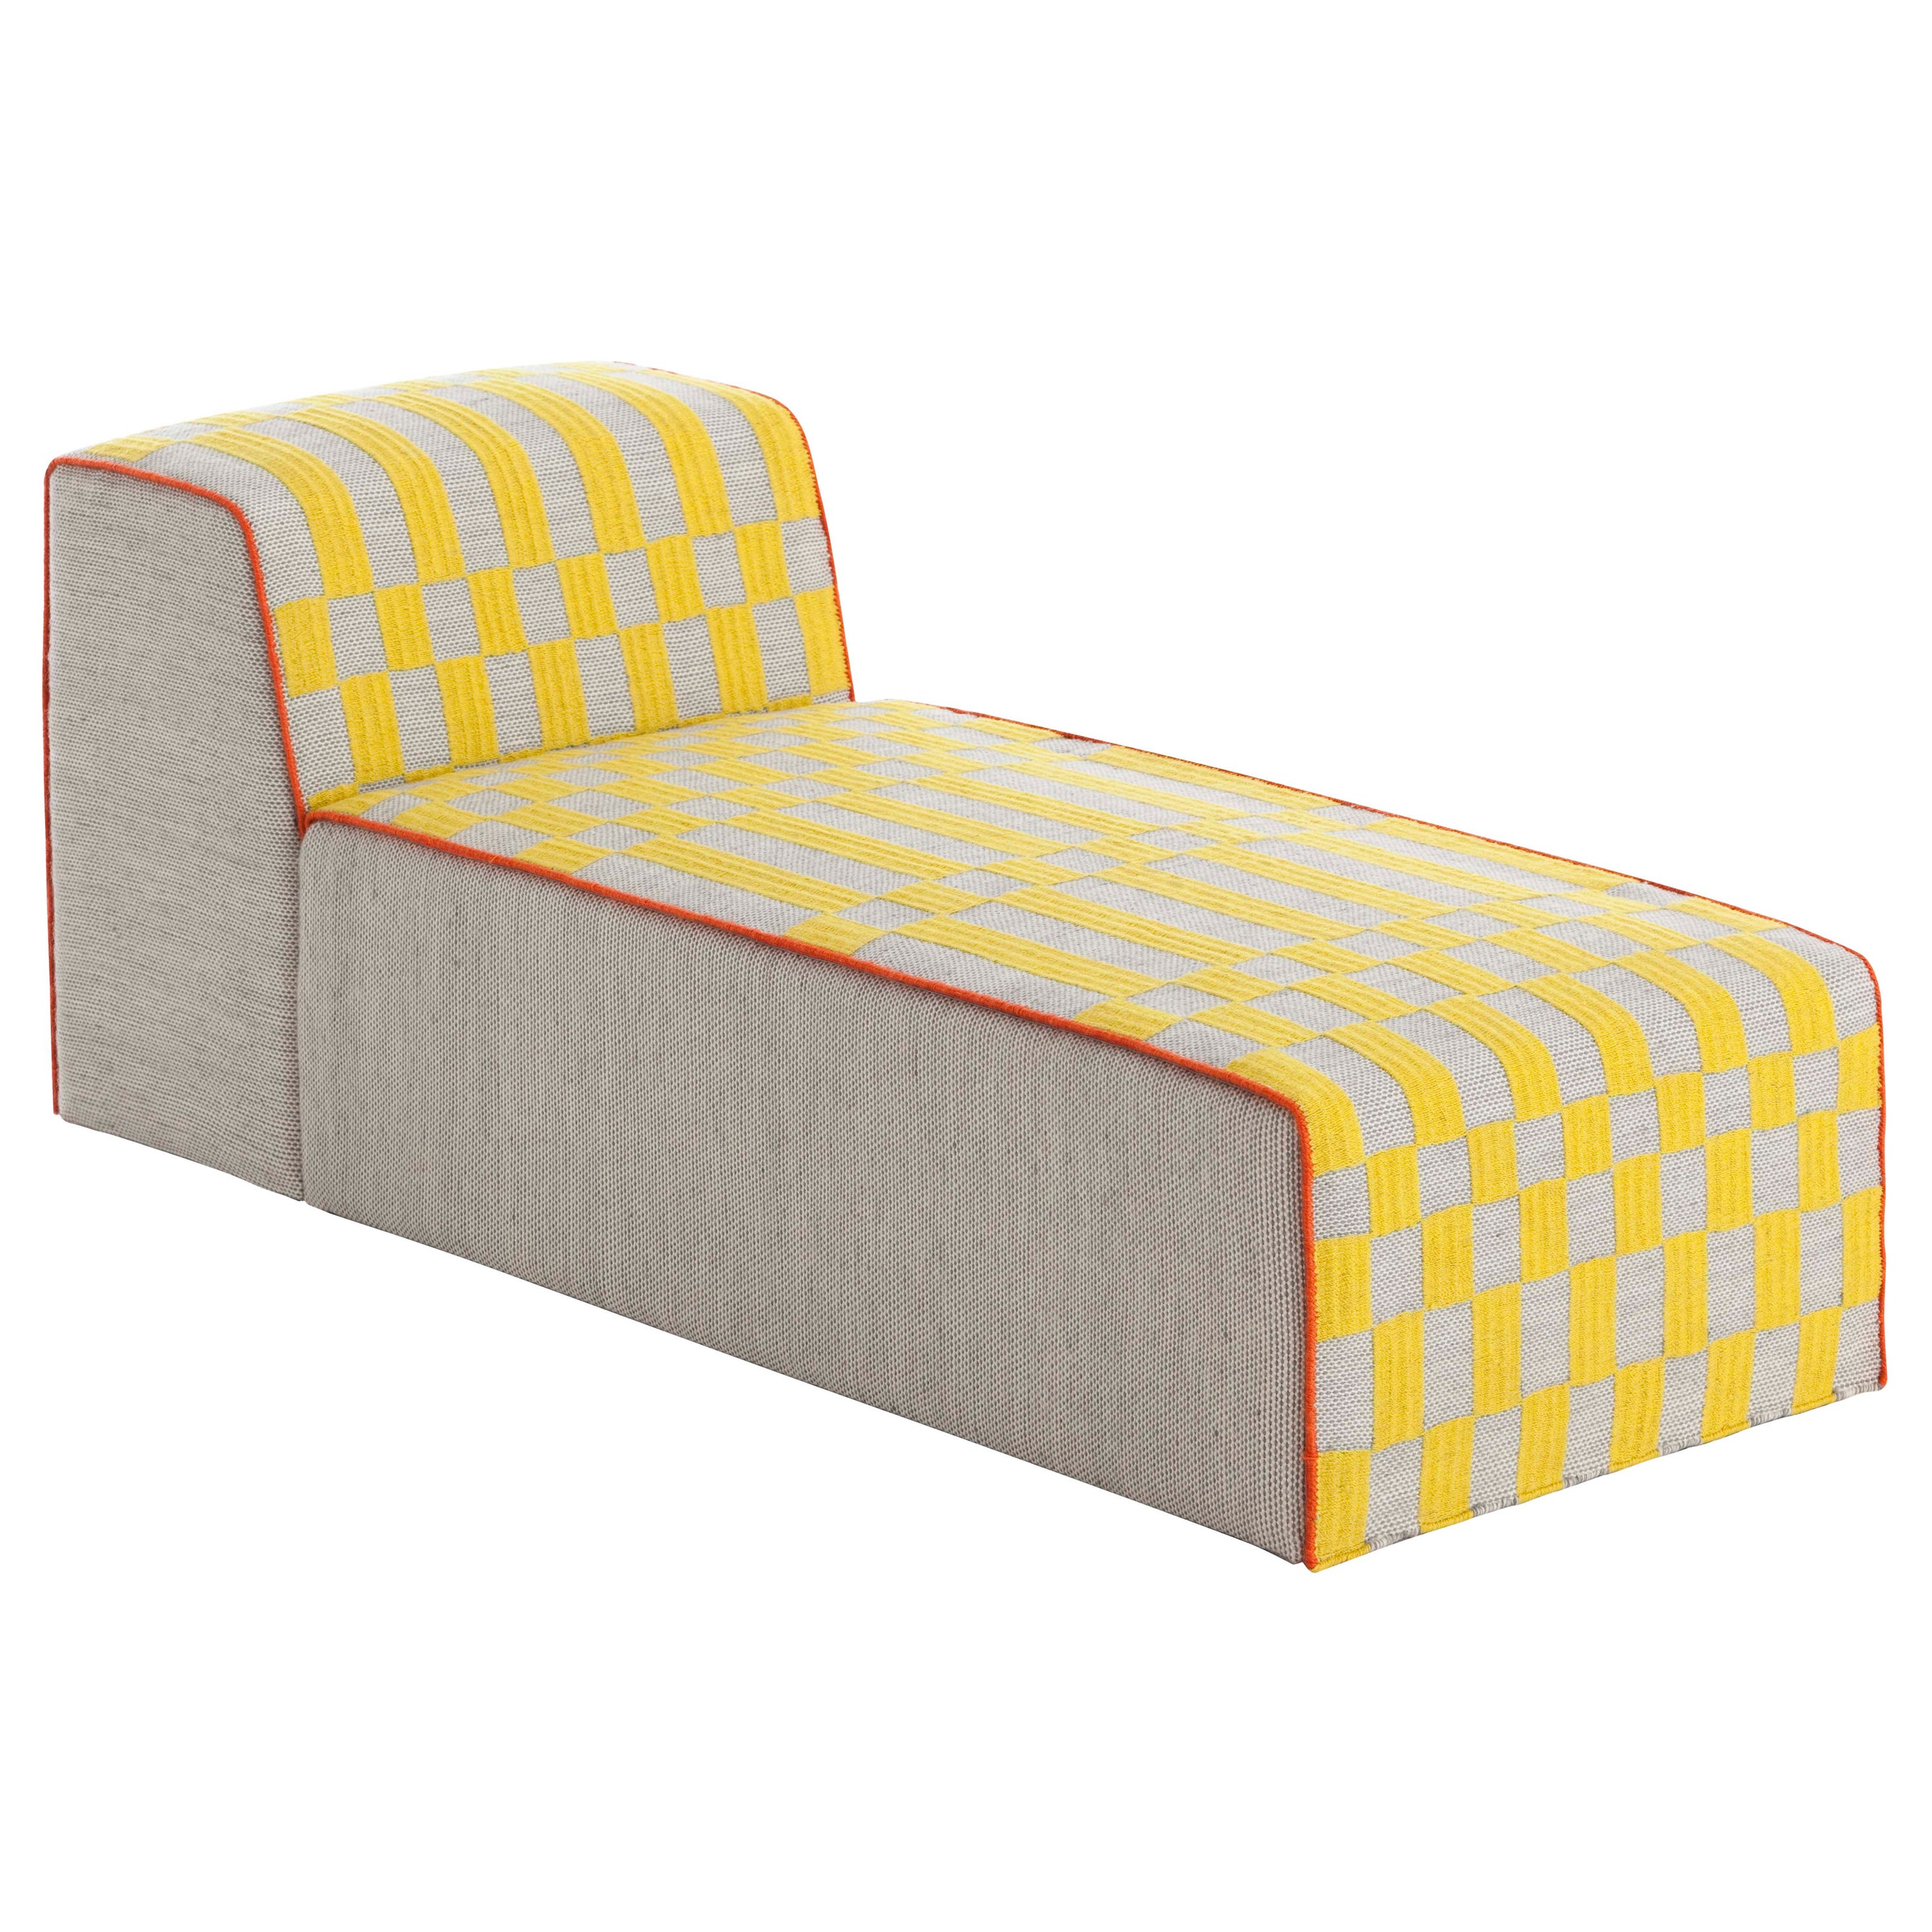 Chaise longue Bandas GAN Spaces jaune B avec cadre en bois de Patricia Urquiola